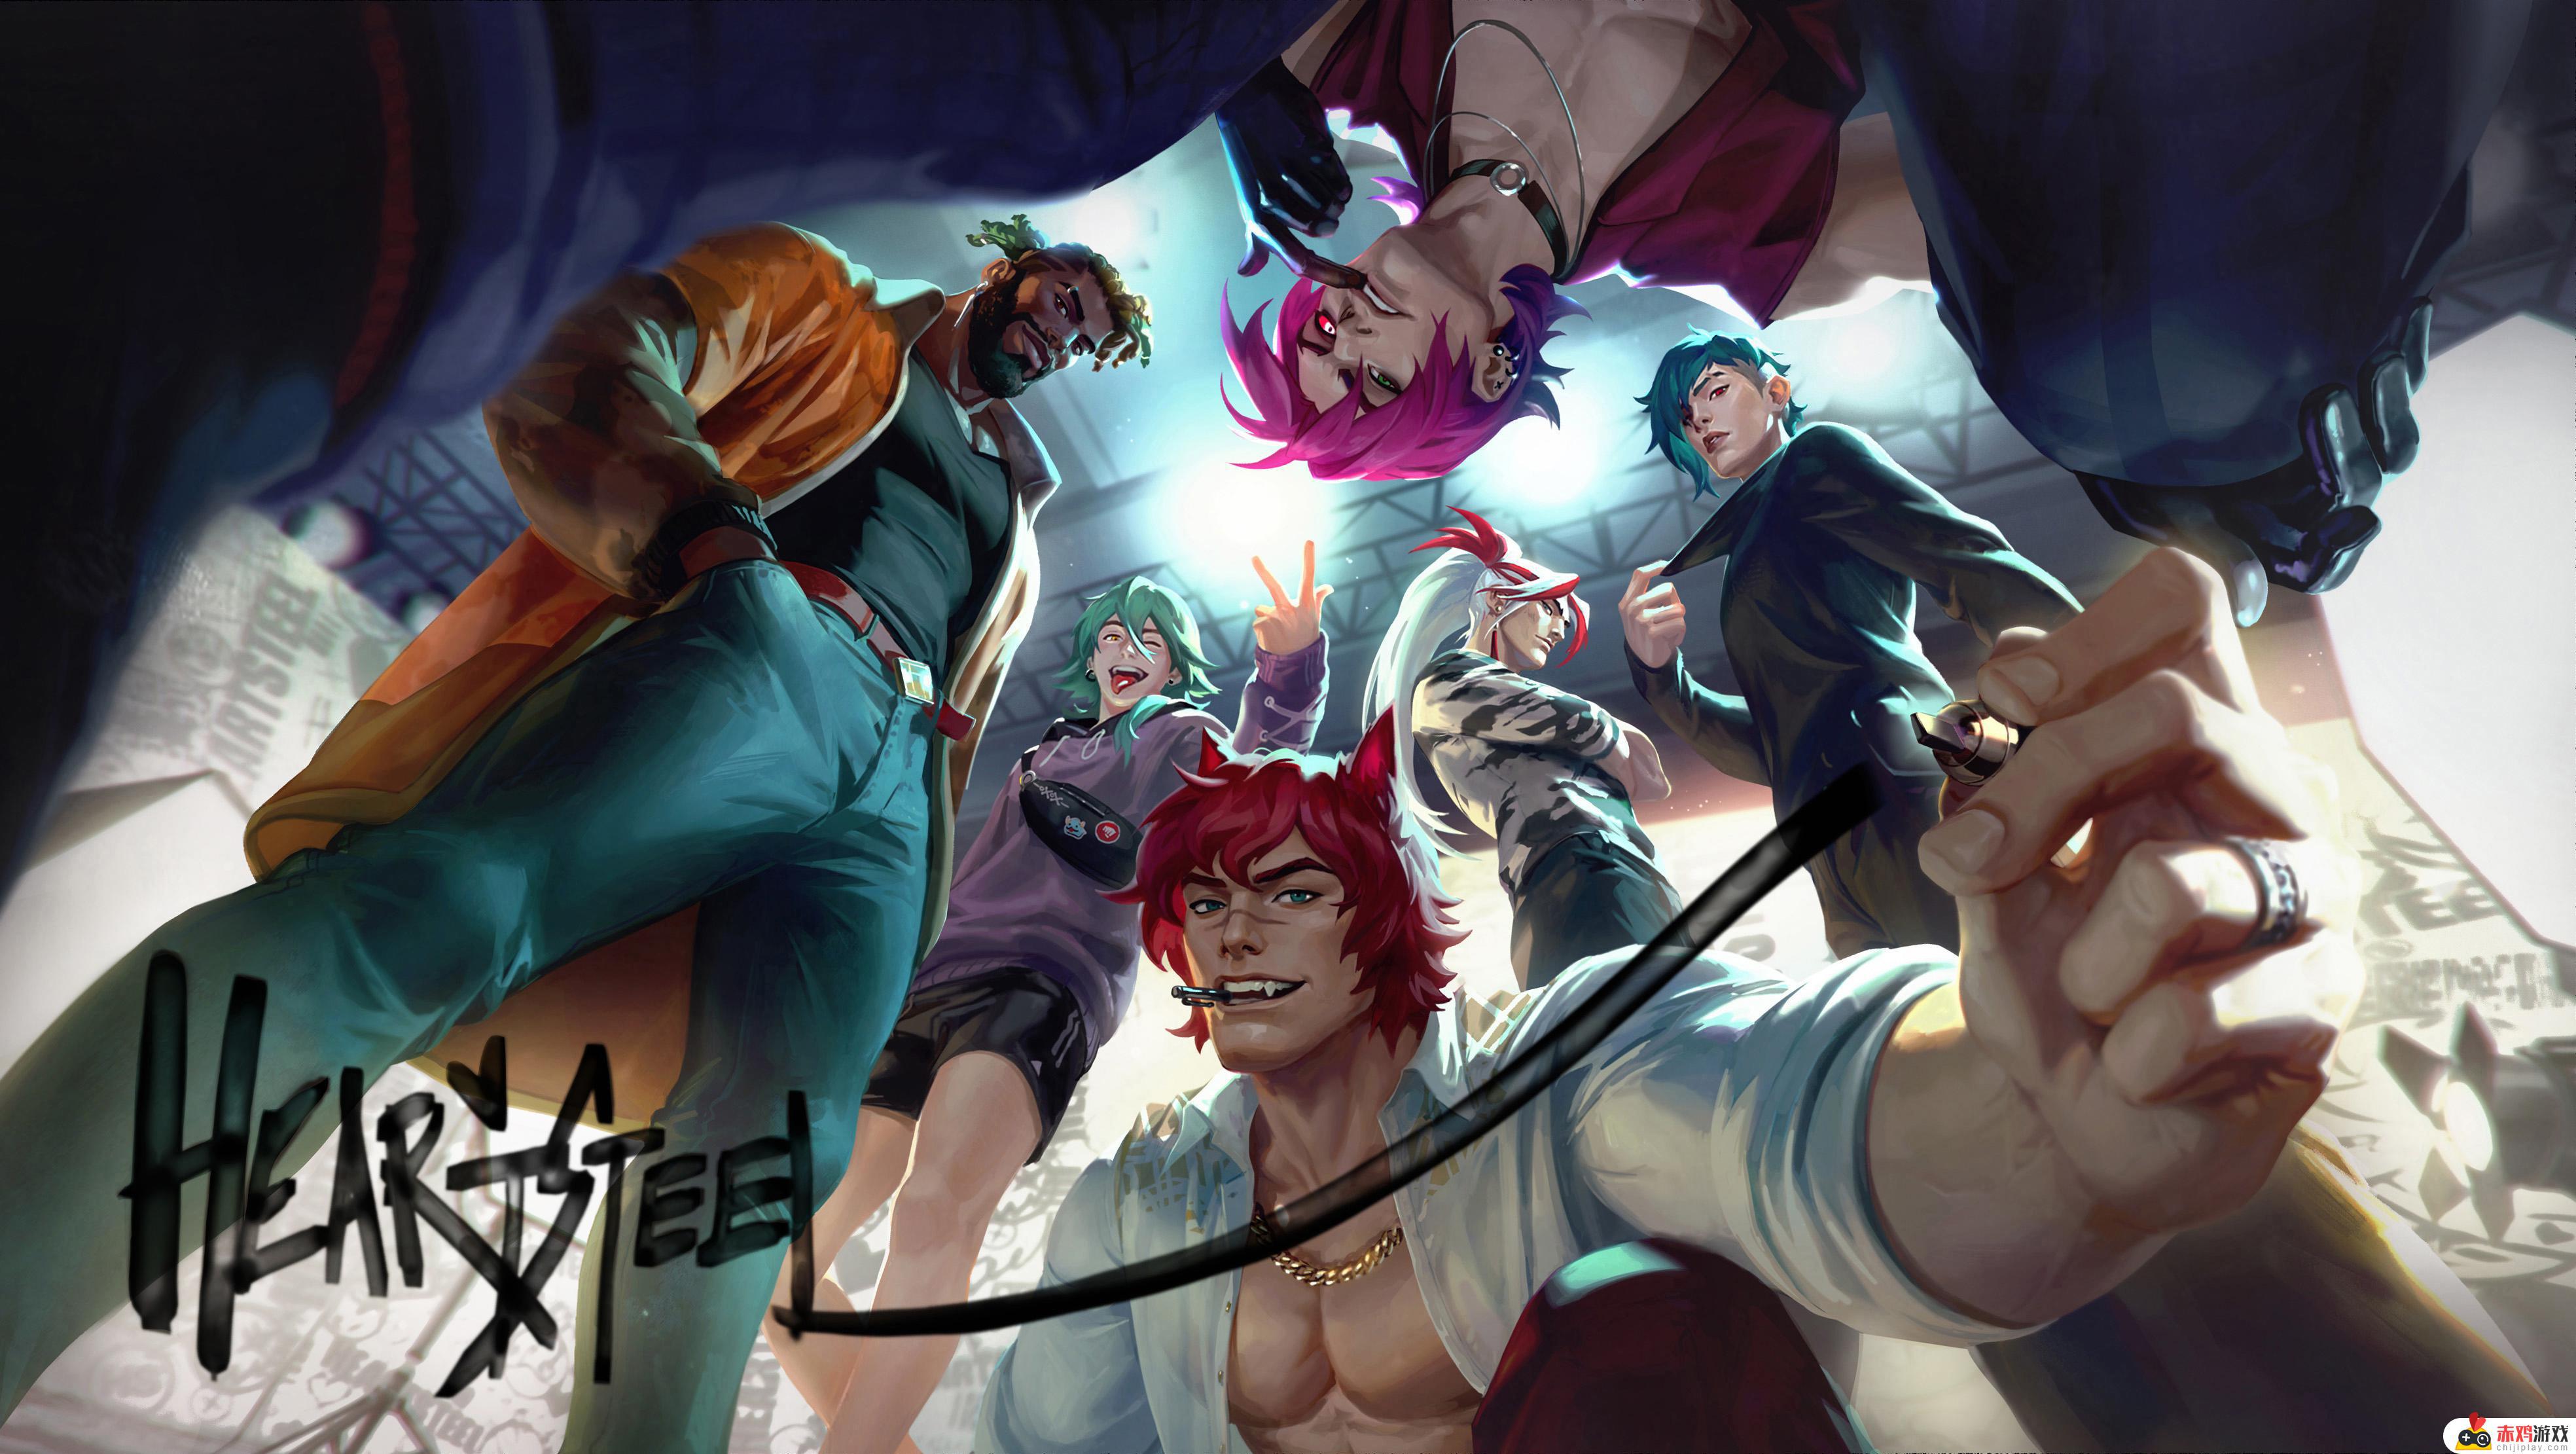 拳头游戏公布全新虚拟乐队HEARTSTEEL及英雄联盟英雄新形象